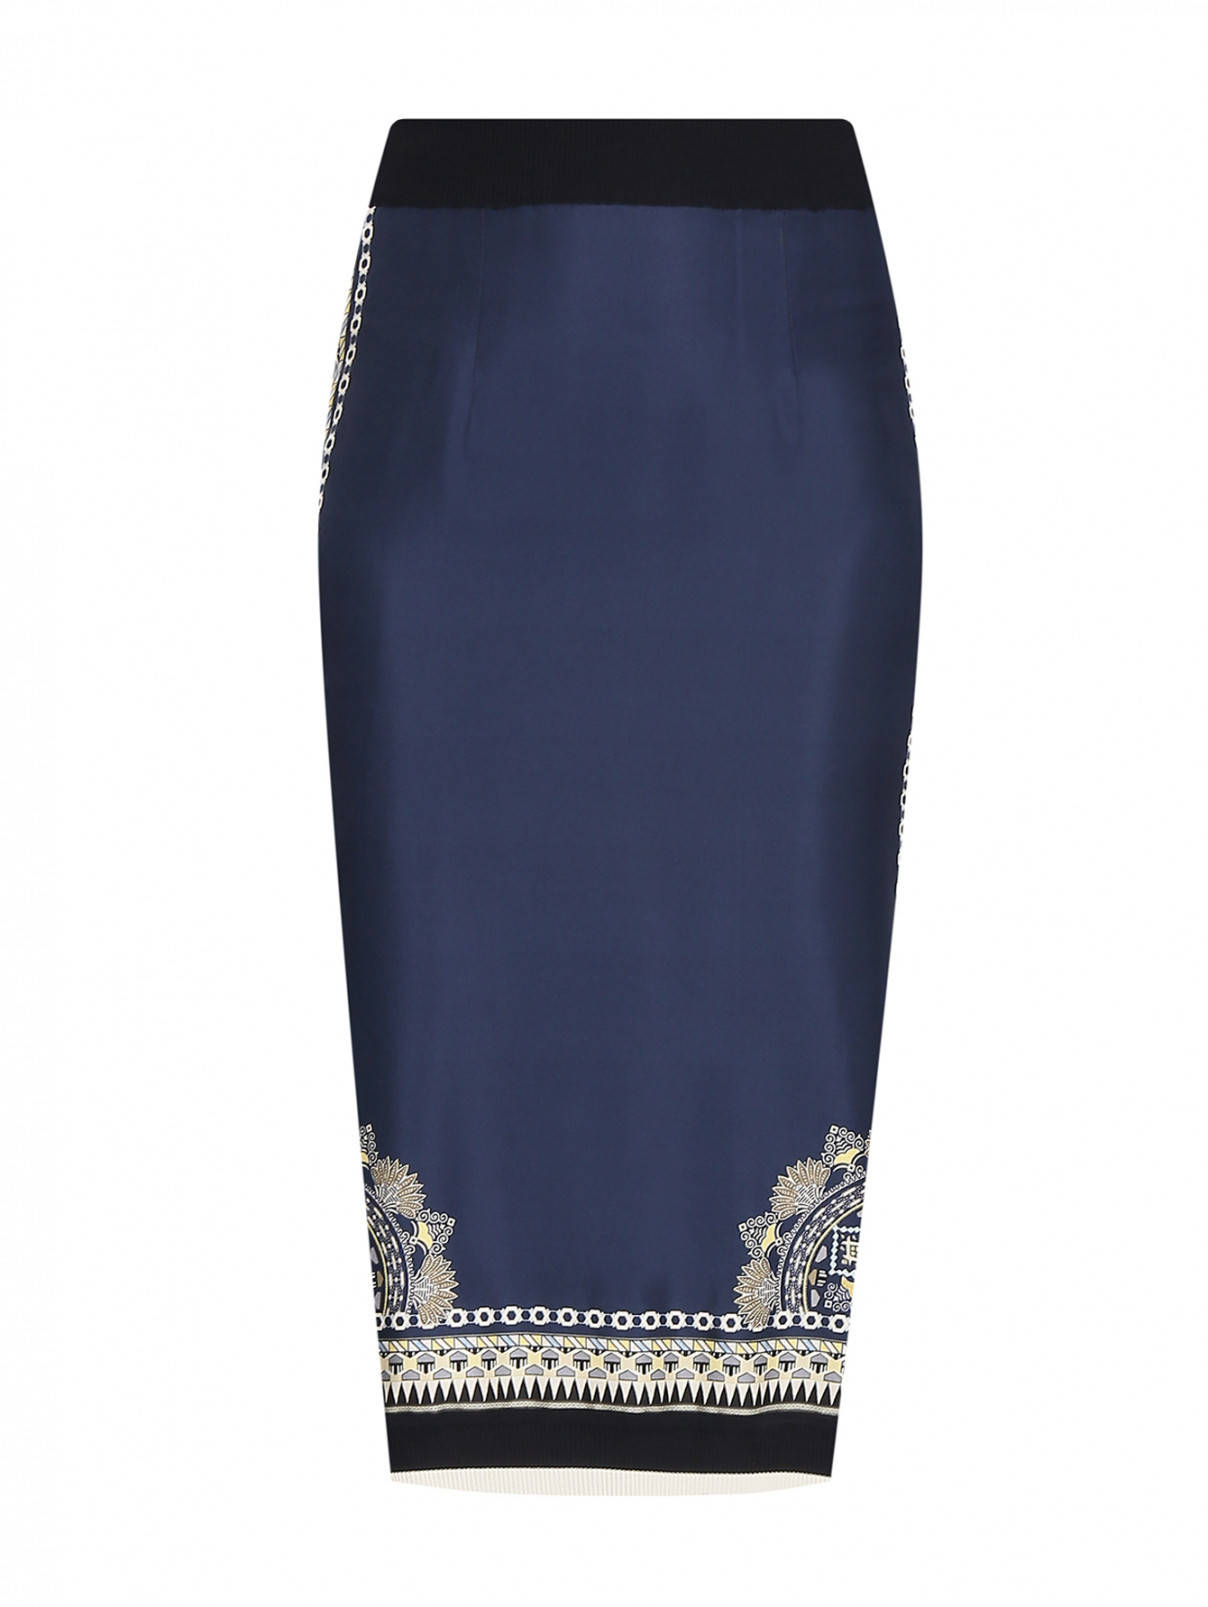 Комбинированная юбка с узором Etro  –  Общий вид  – Цвет:  Синий